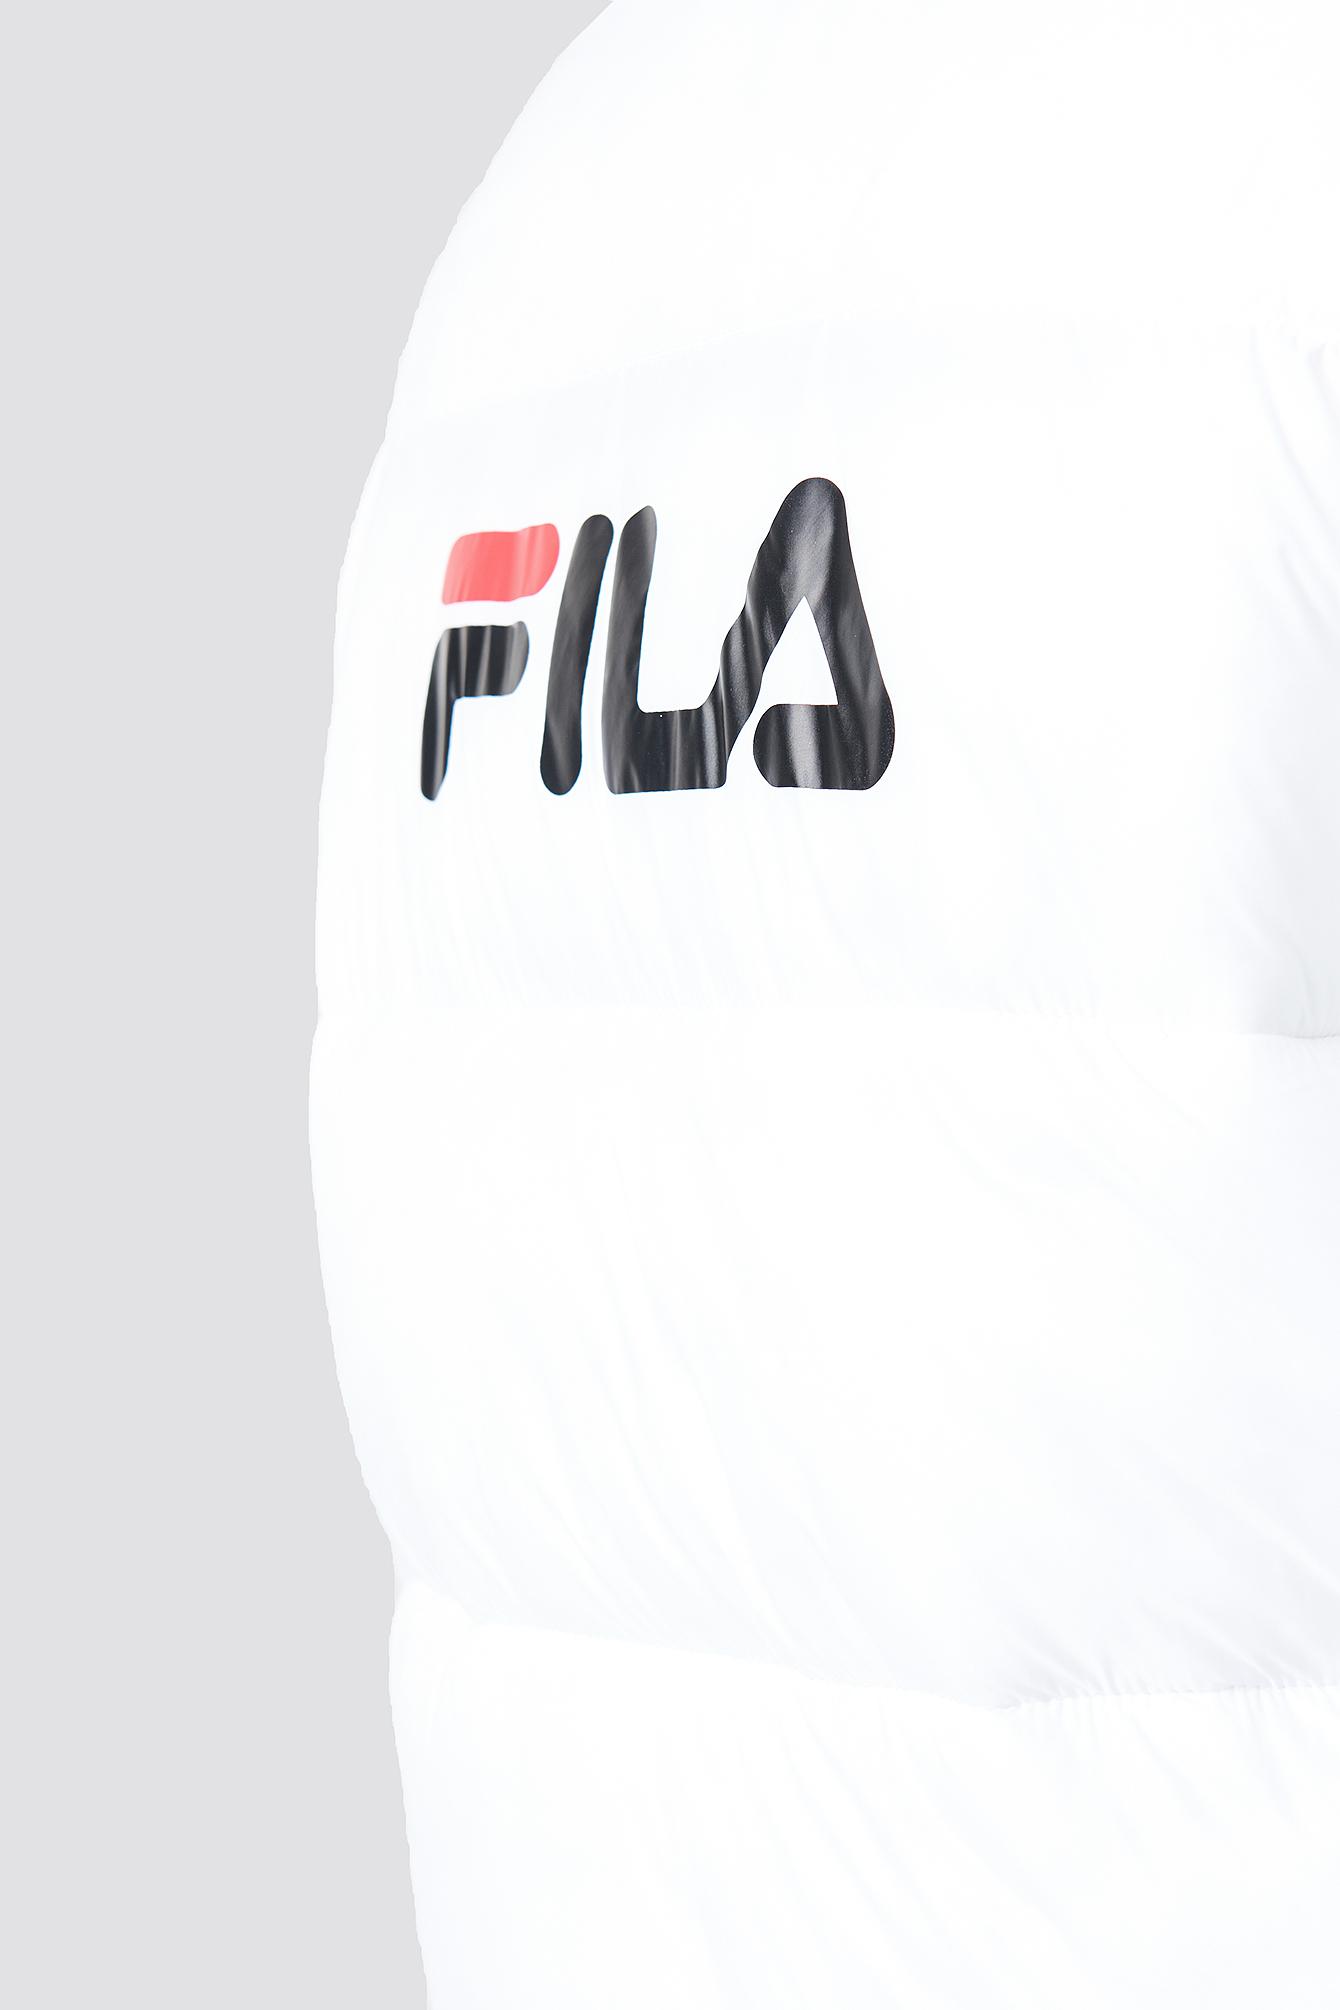 Fila Zia Long Puff Deals - mb-firm.com 1695046059